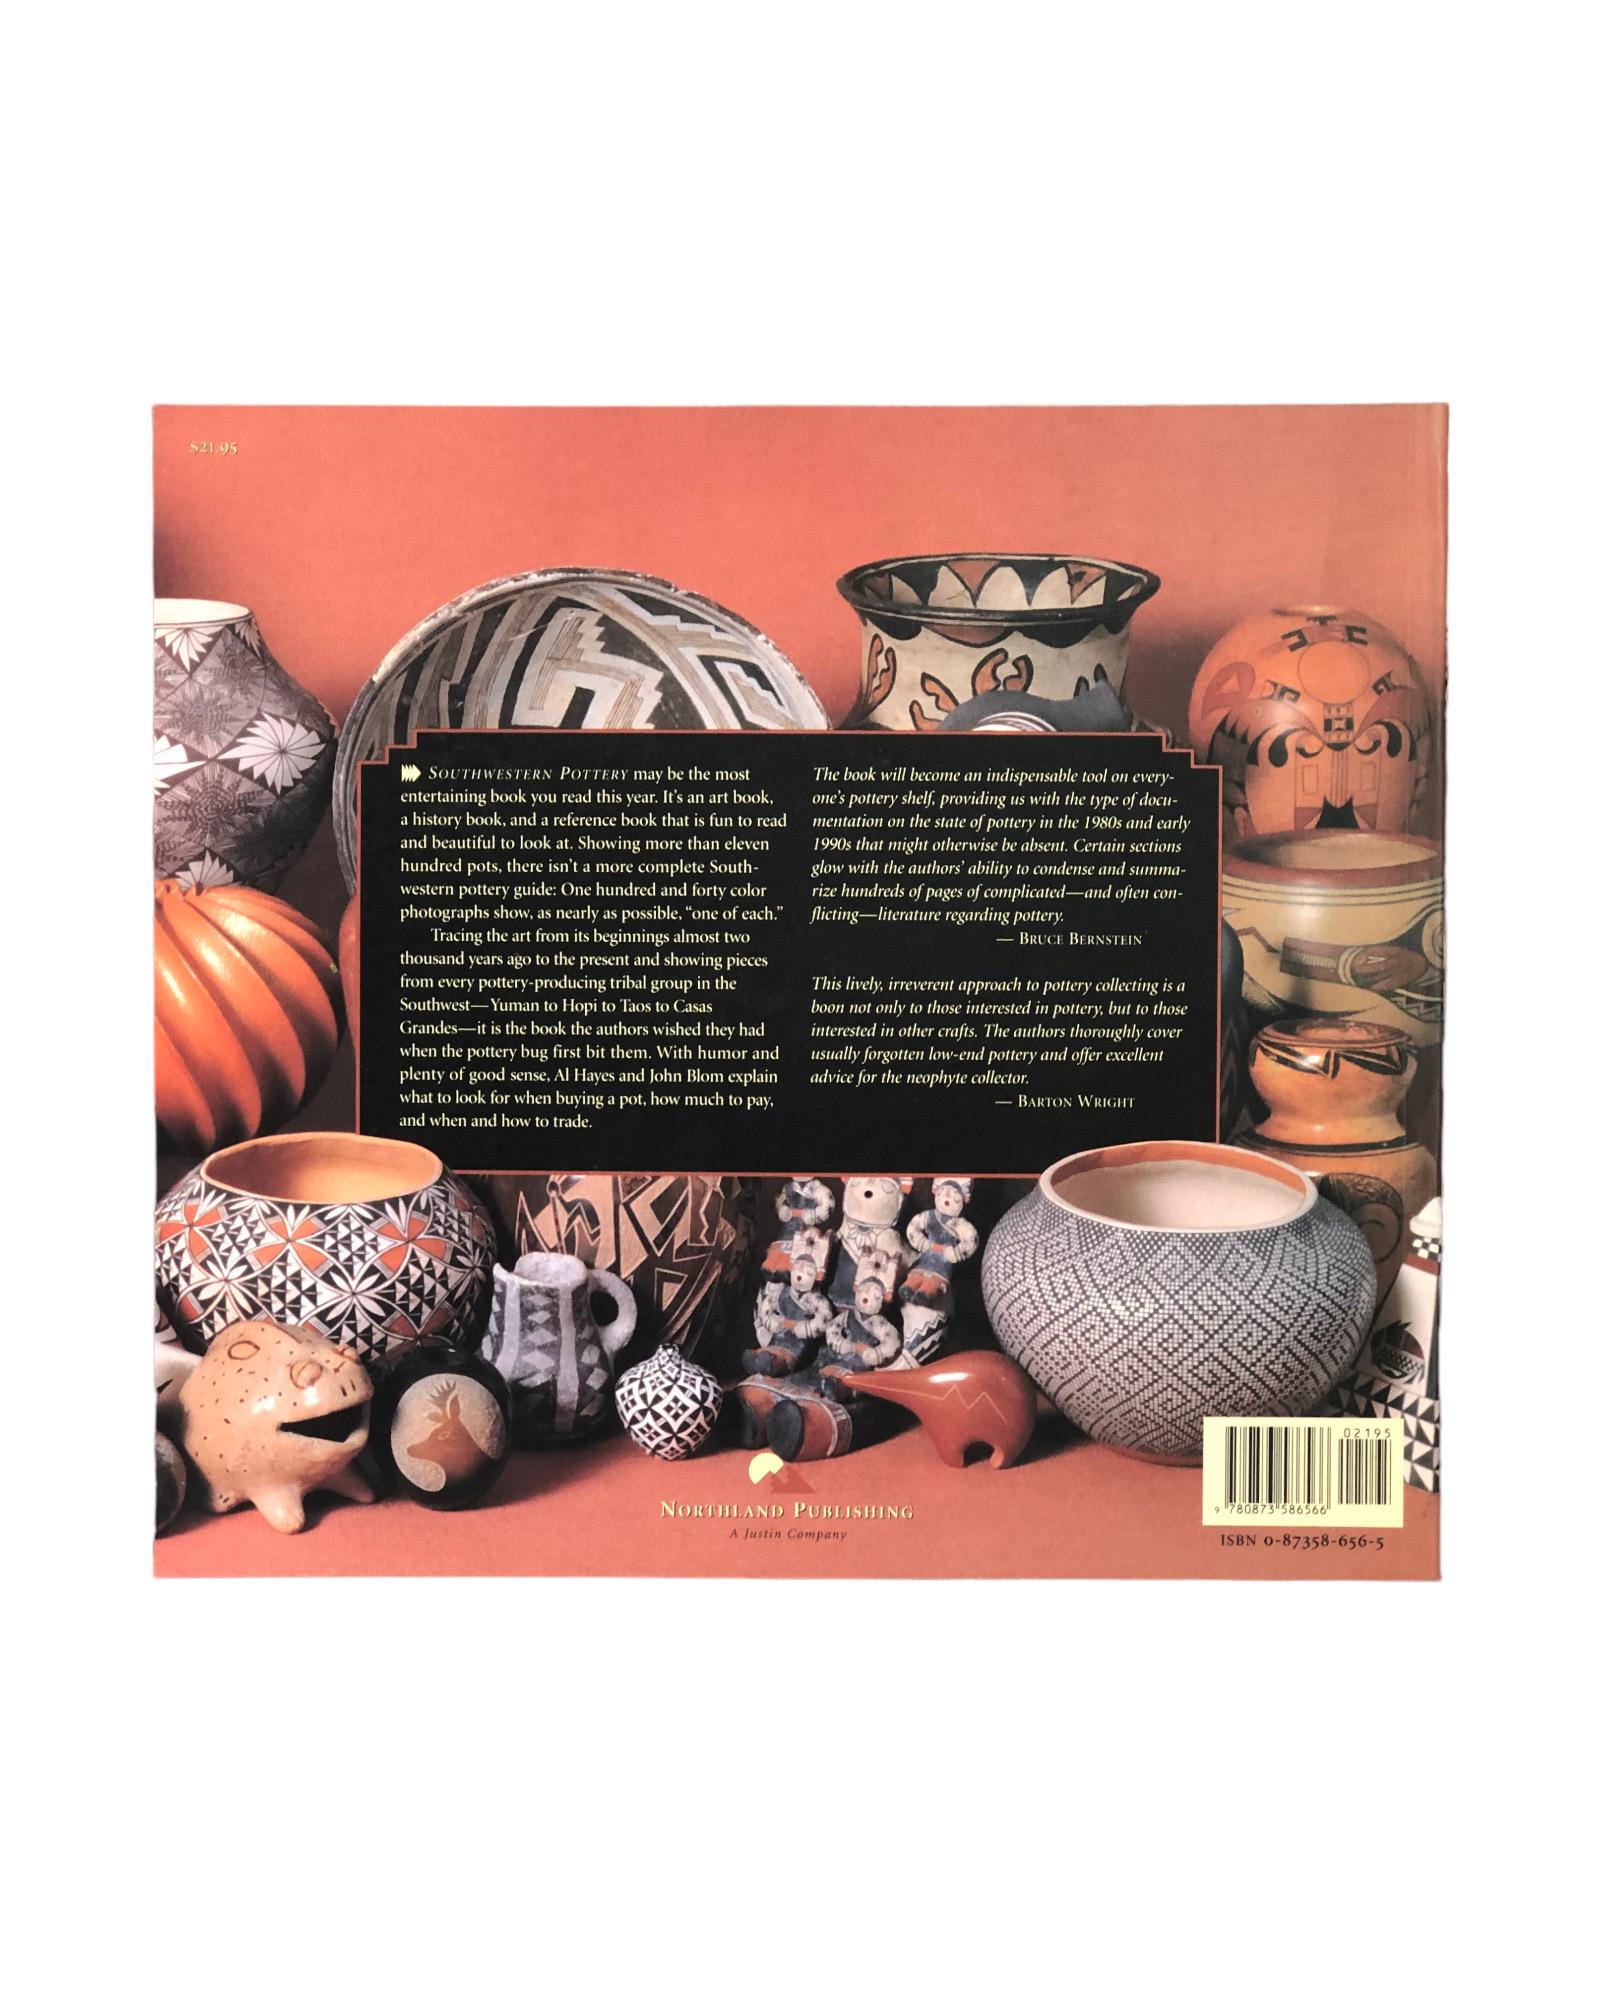 Southwestern Pottery - Anasazi to Zuni par Allan Hayes et John Blom. Livre à couverture souple, publié en 1997 par Northland Publishing. Fabriqué à Hong Kong, illustré, 189 pages.
